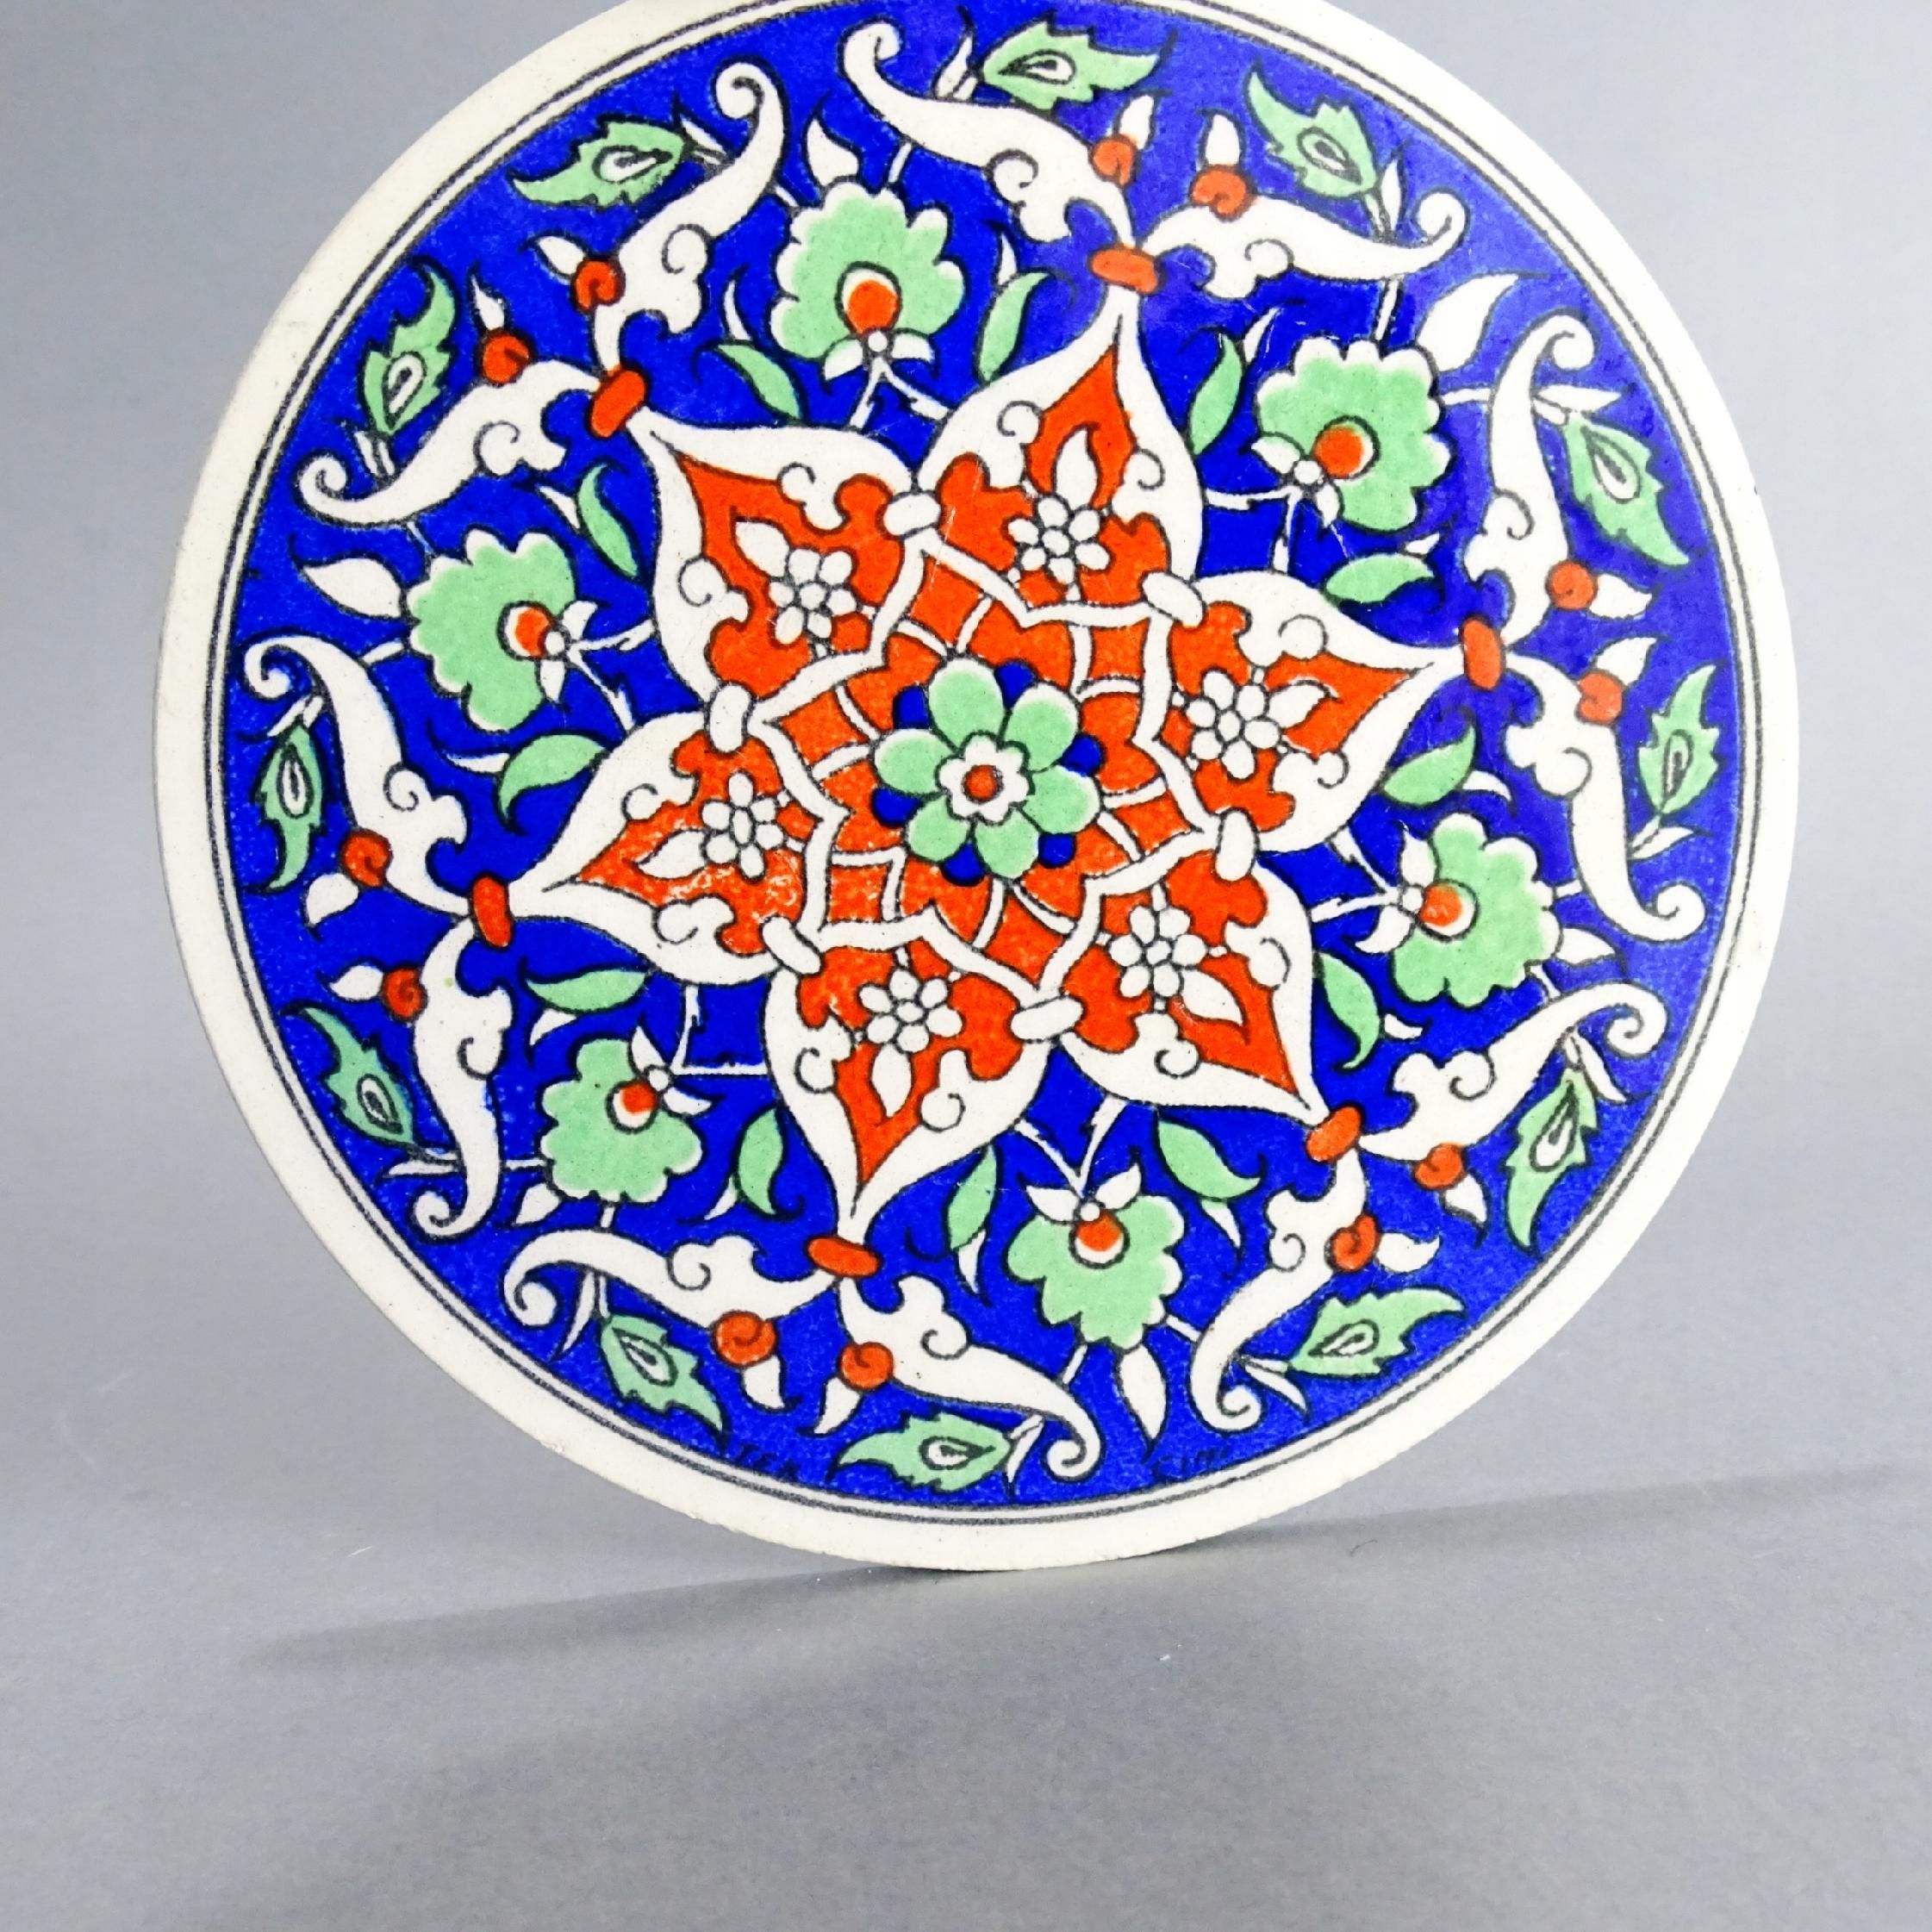 ceramika turecka piękna podstawa stołowa pod naczynia